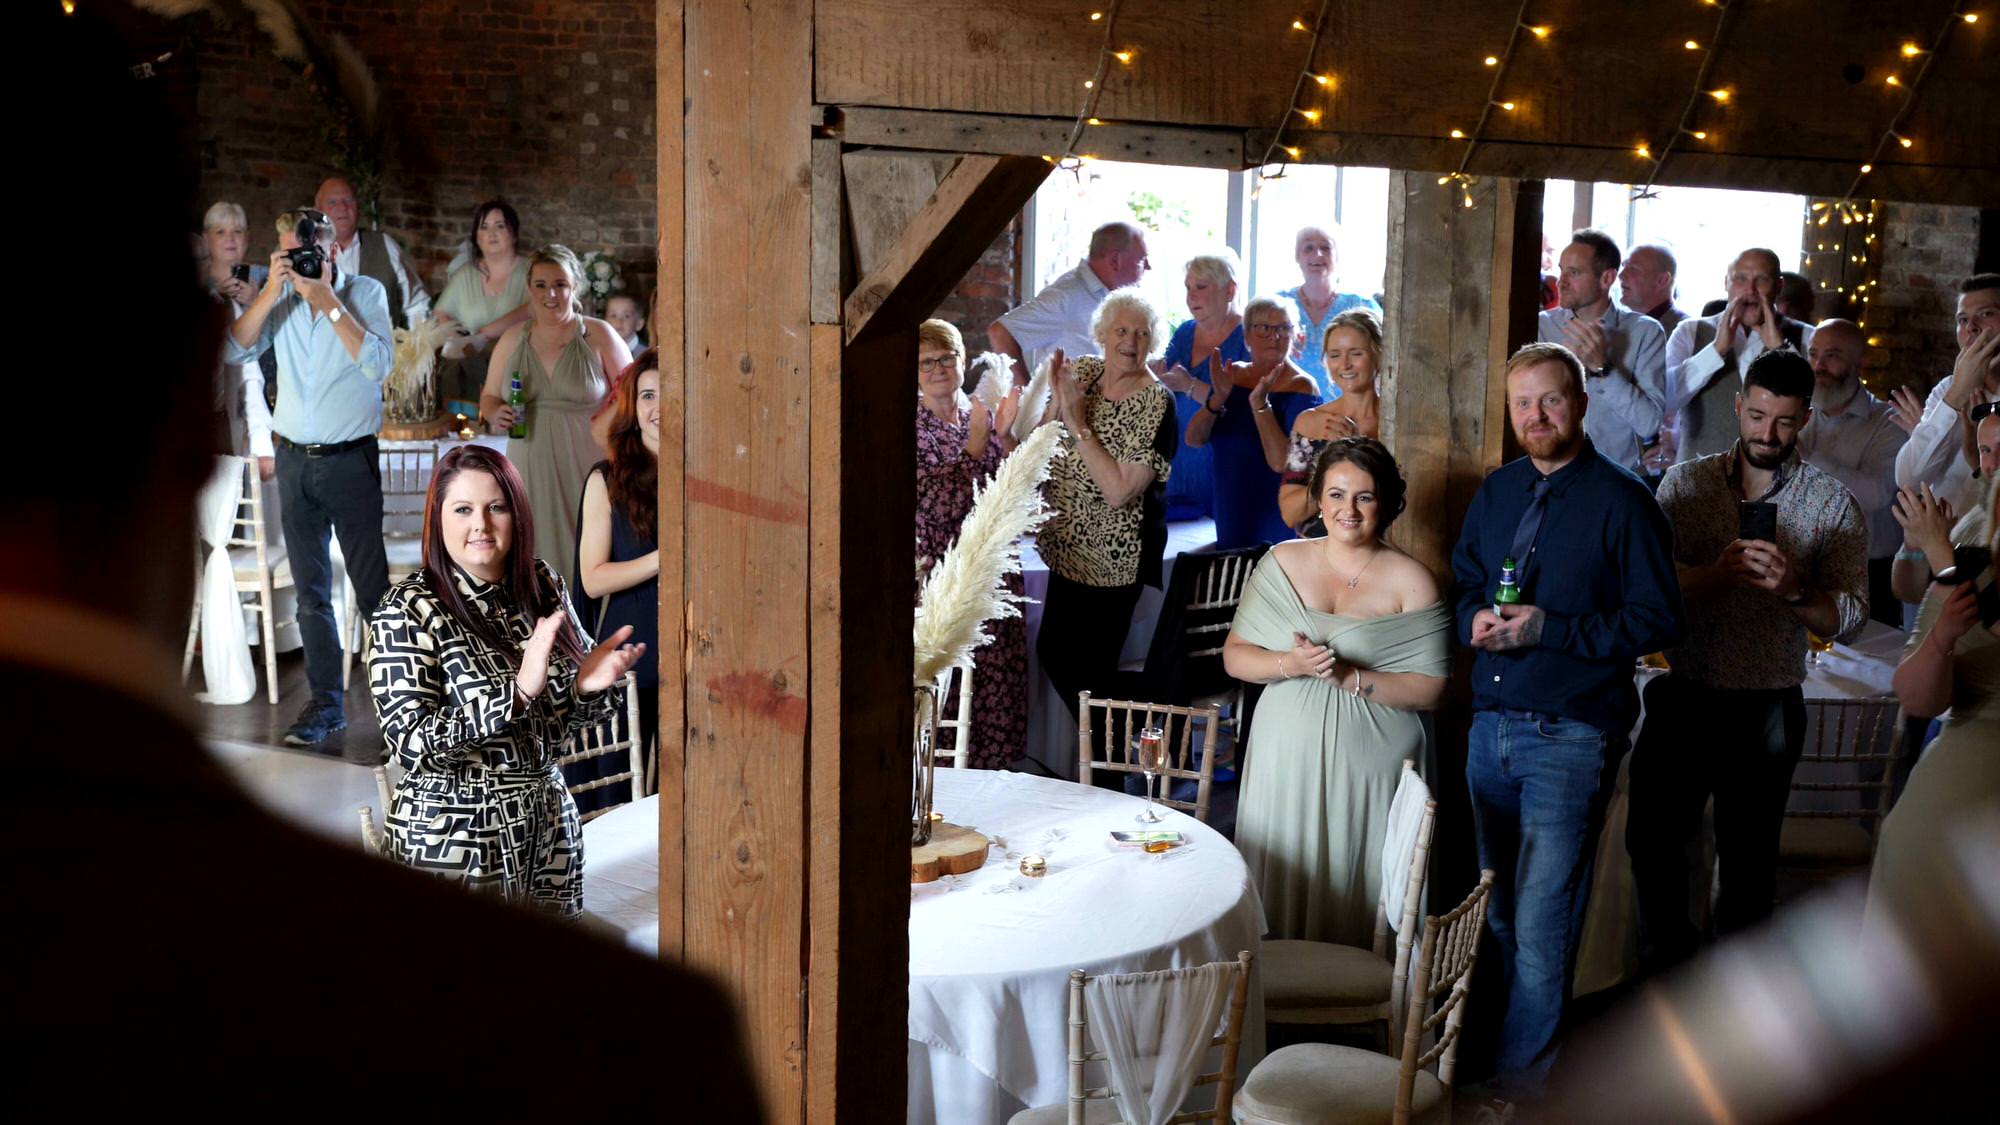 guests cheer the couple at a wedding reception at the barn at morleys hall